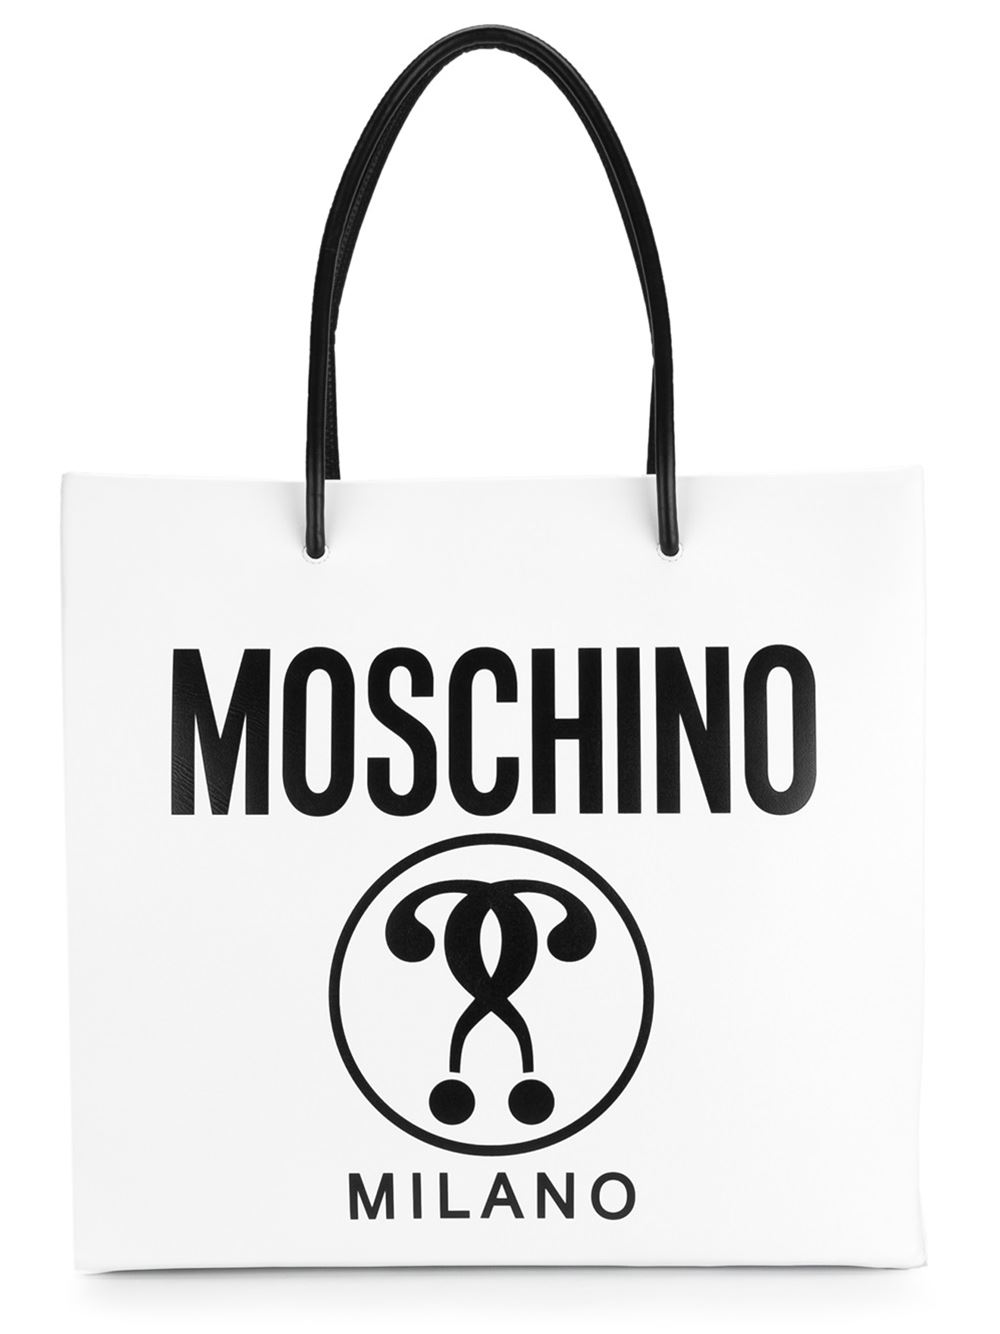 moschino logo手提包海淘返利 | 米饭粒返利网